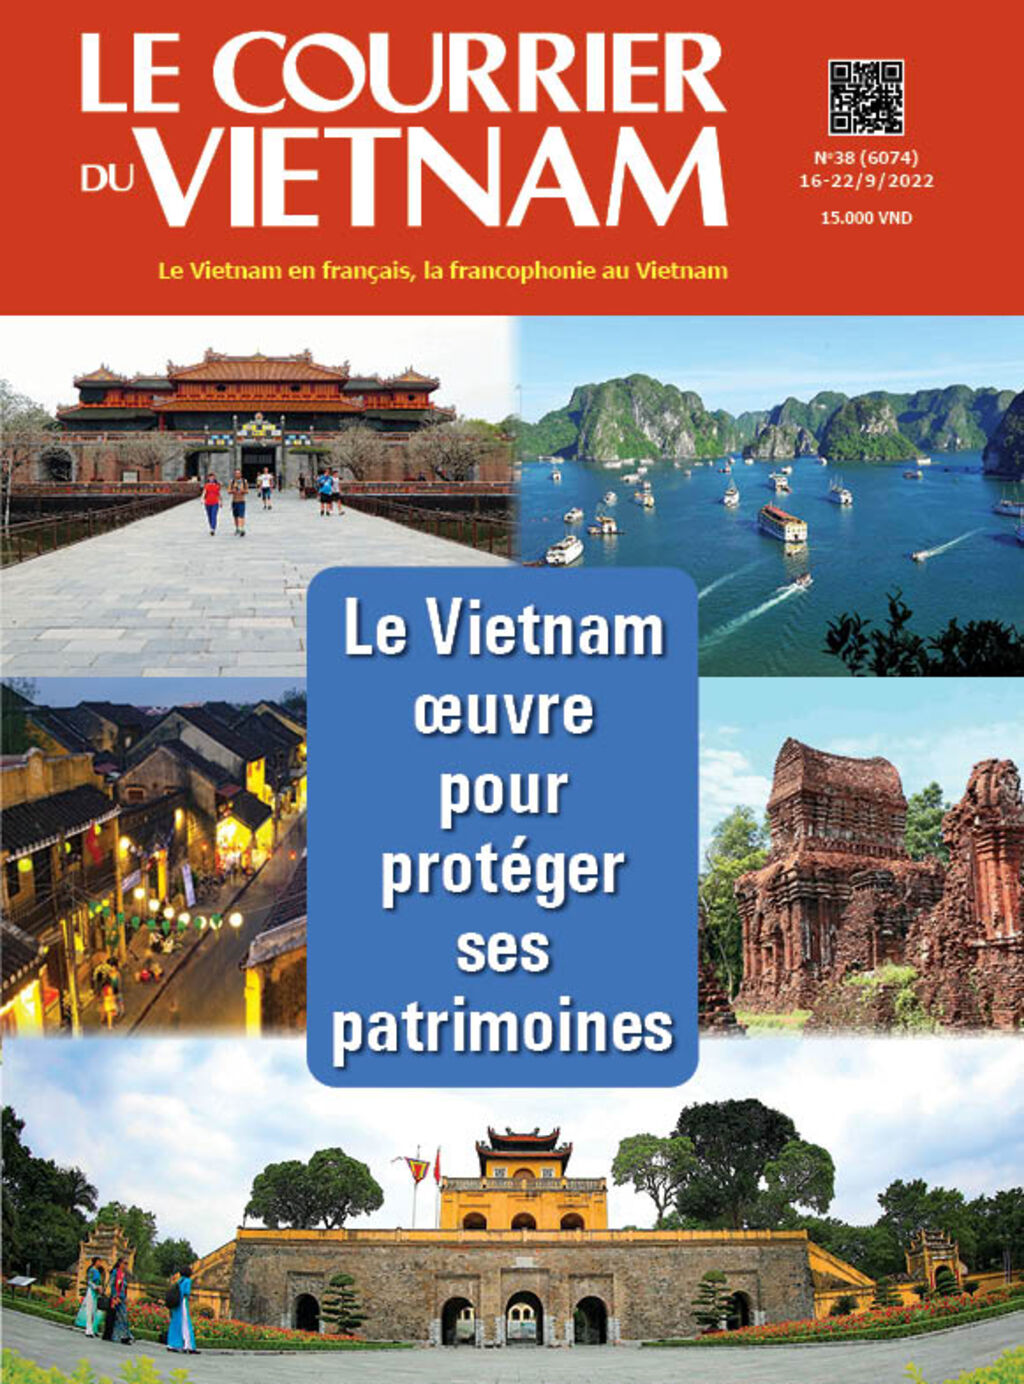 Architecture De La Citadelle Impériale De Thang Long Hanoi, Patrimoine De  L'unesco, Merveille Naturelle Du Vietnam Travel